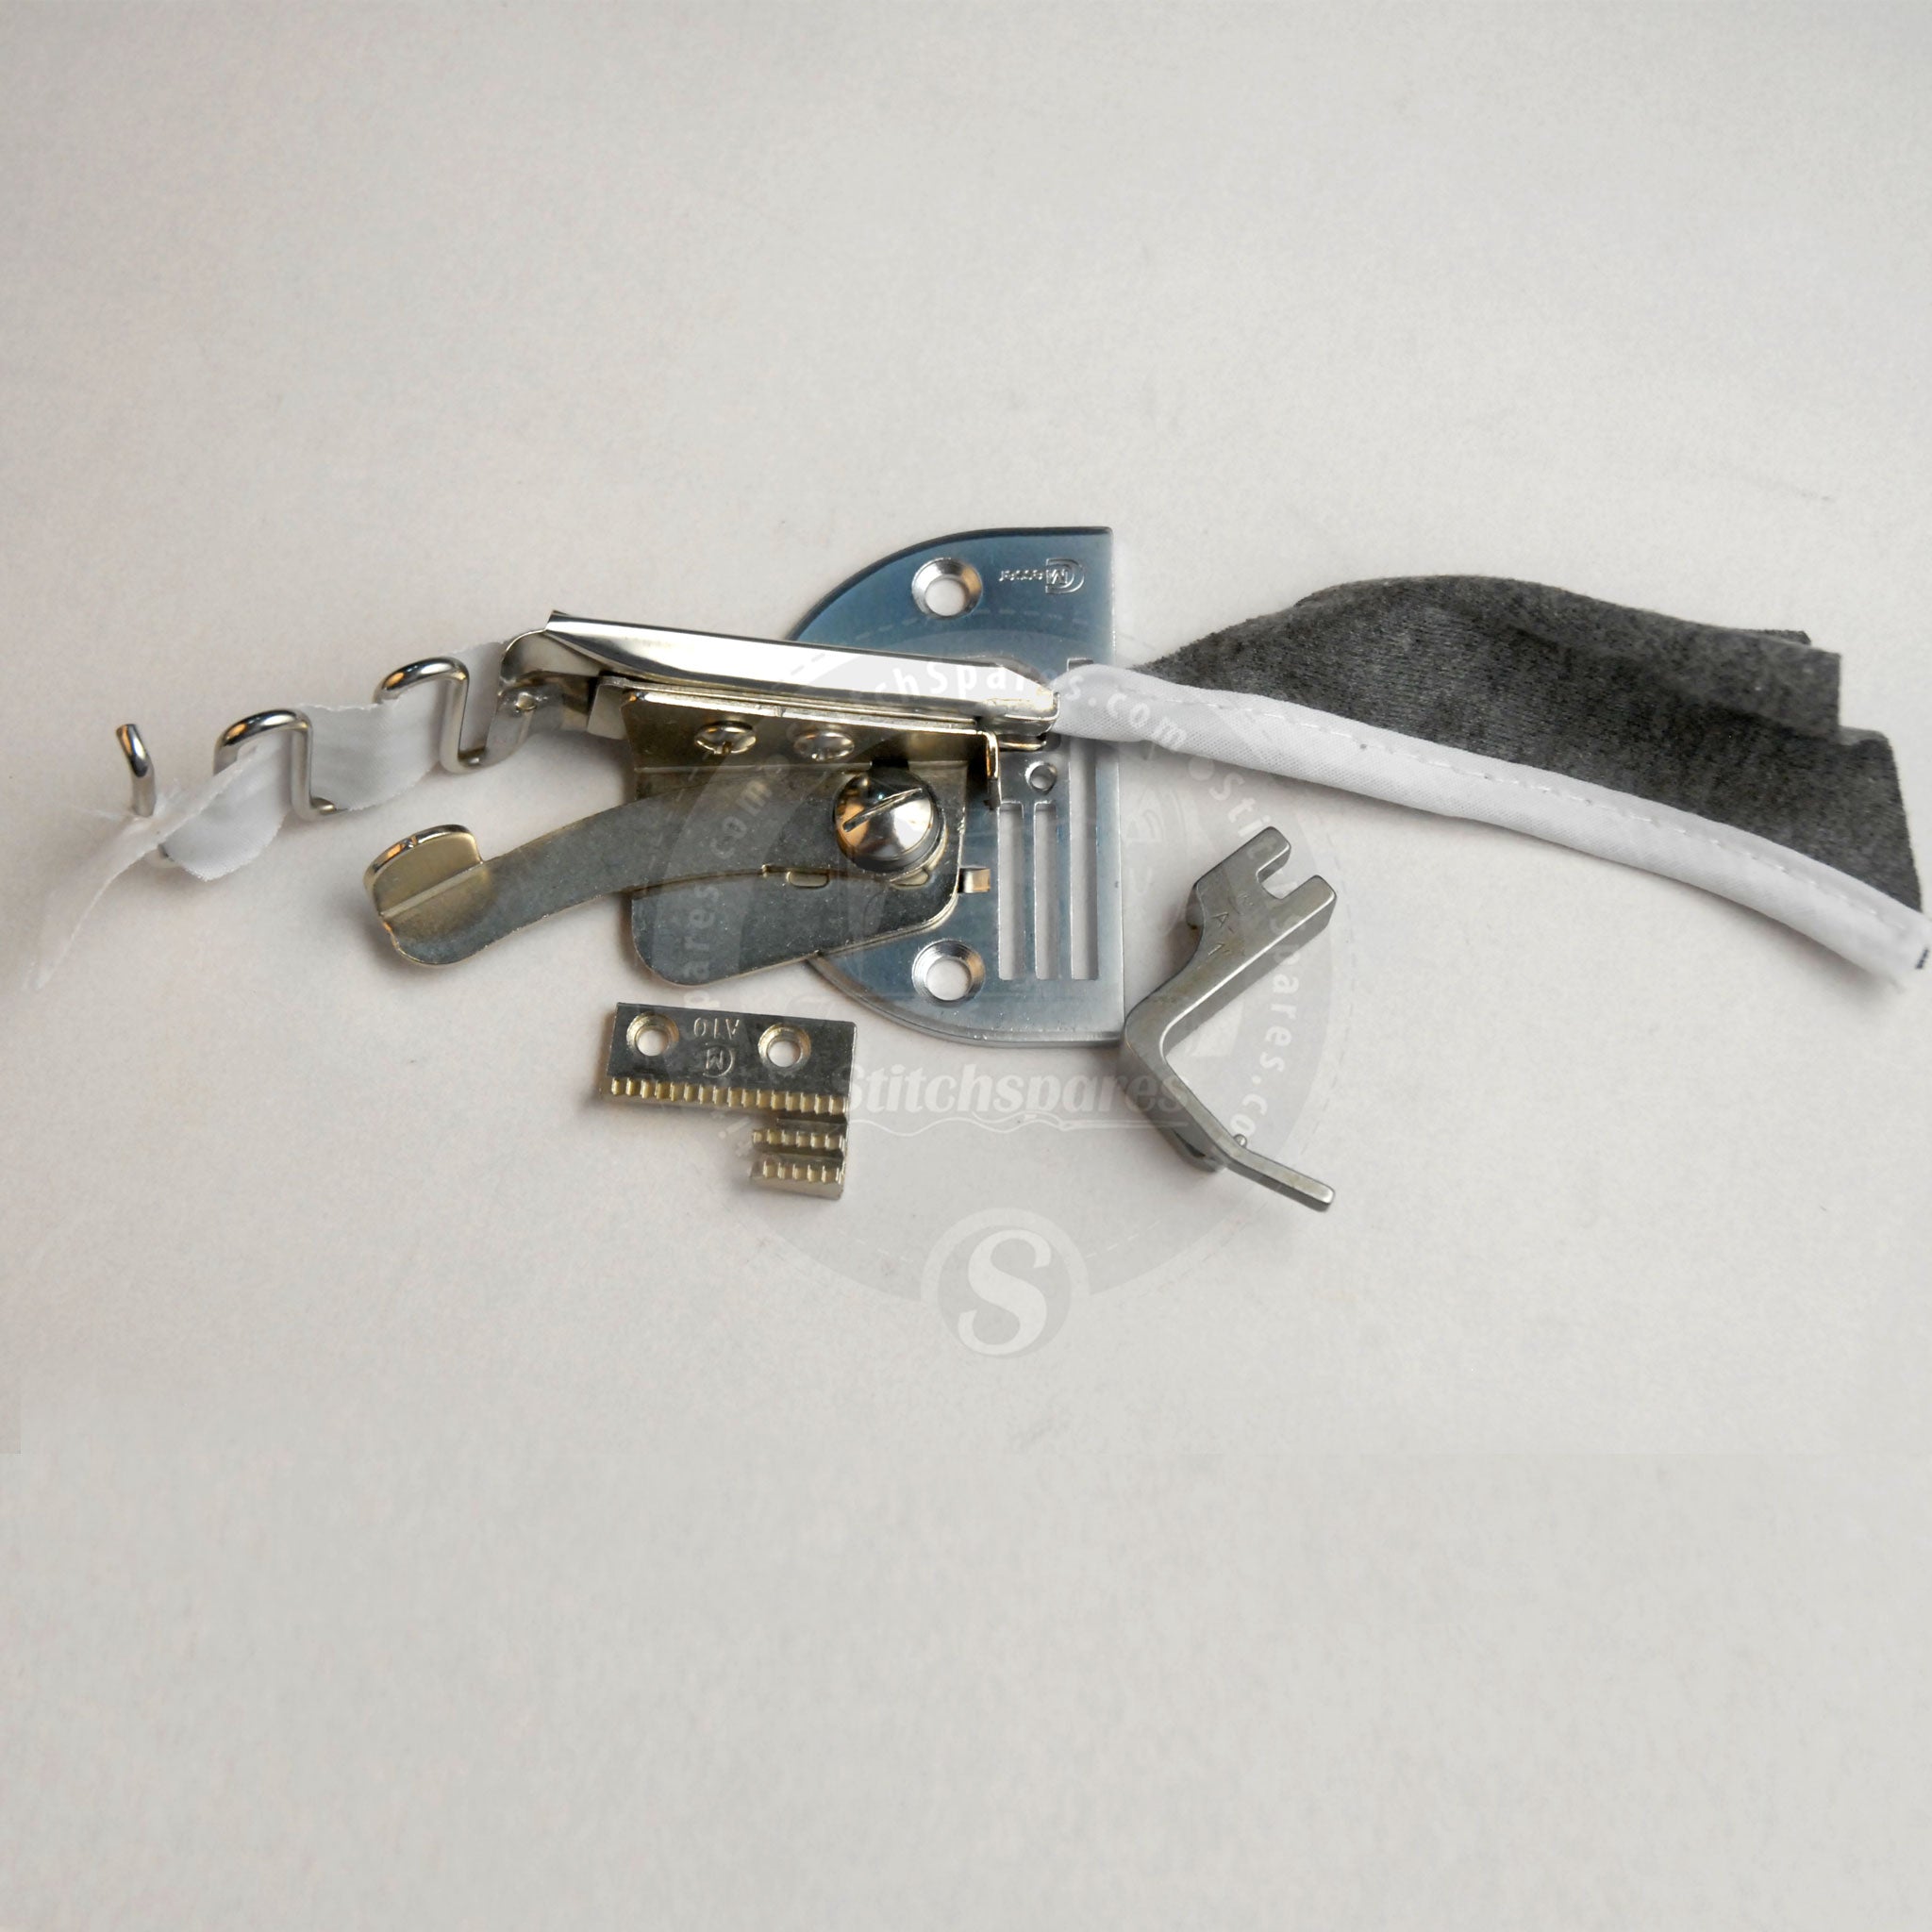 A10 Schrägbinder (Single Needle Lock Stitch Machine)